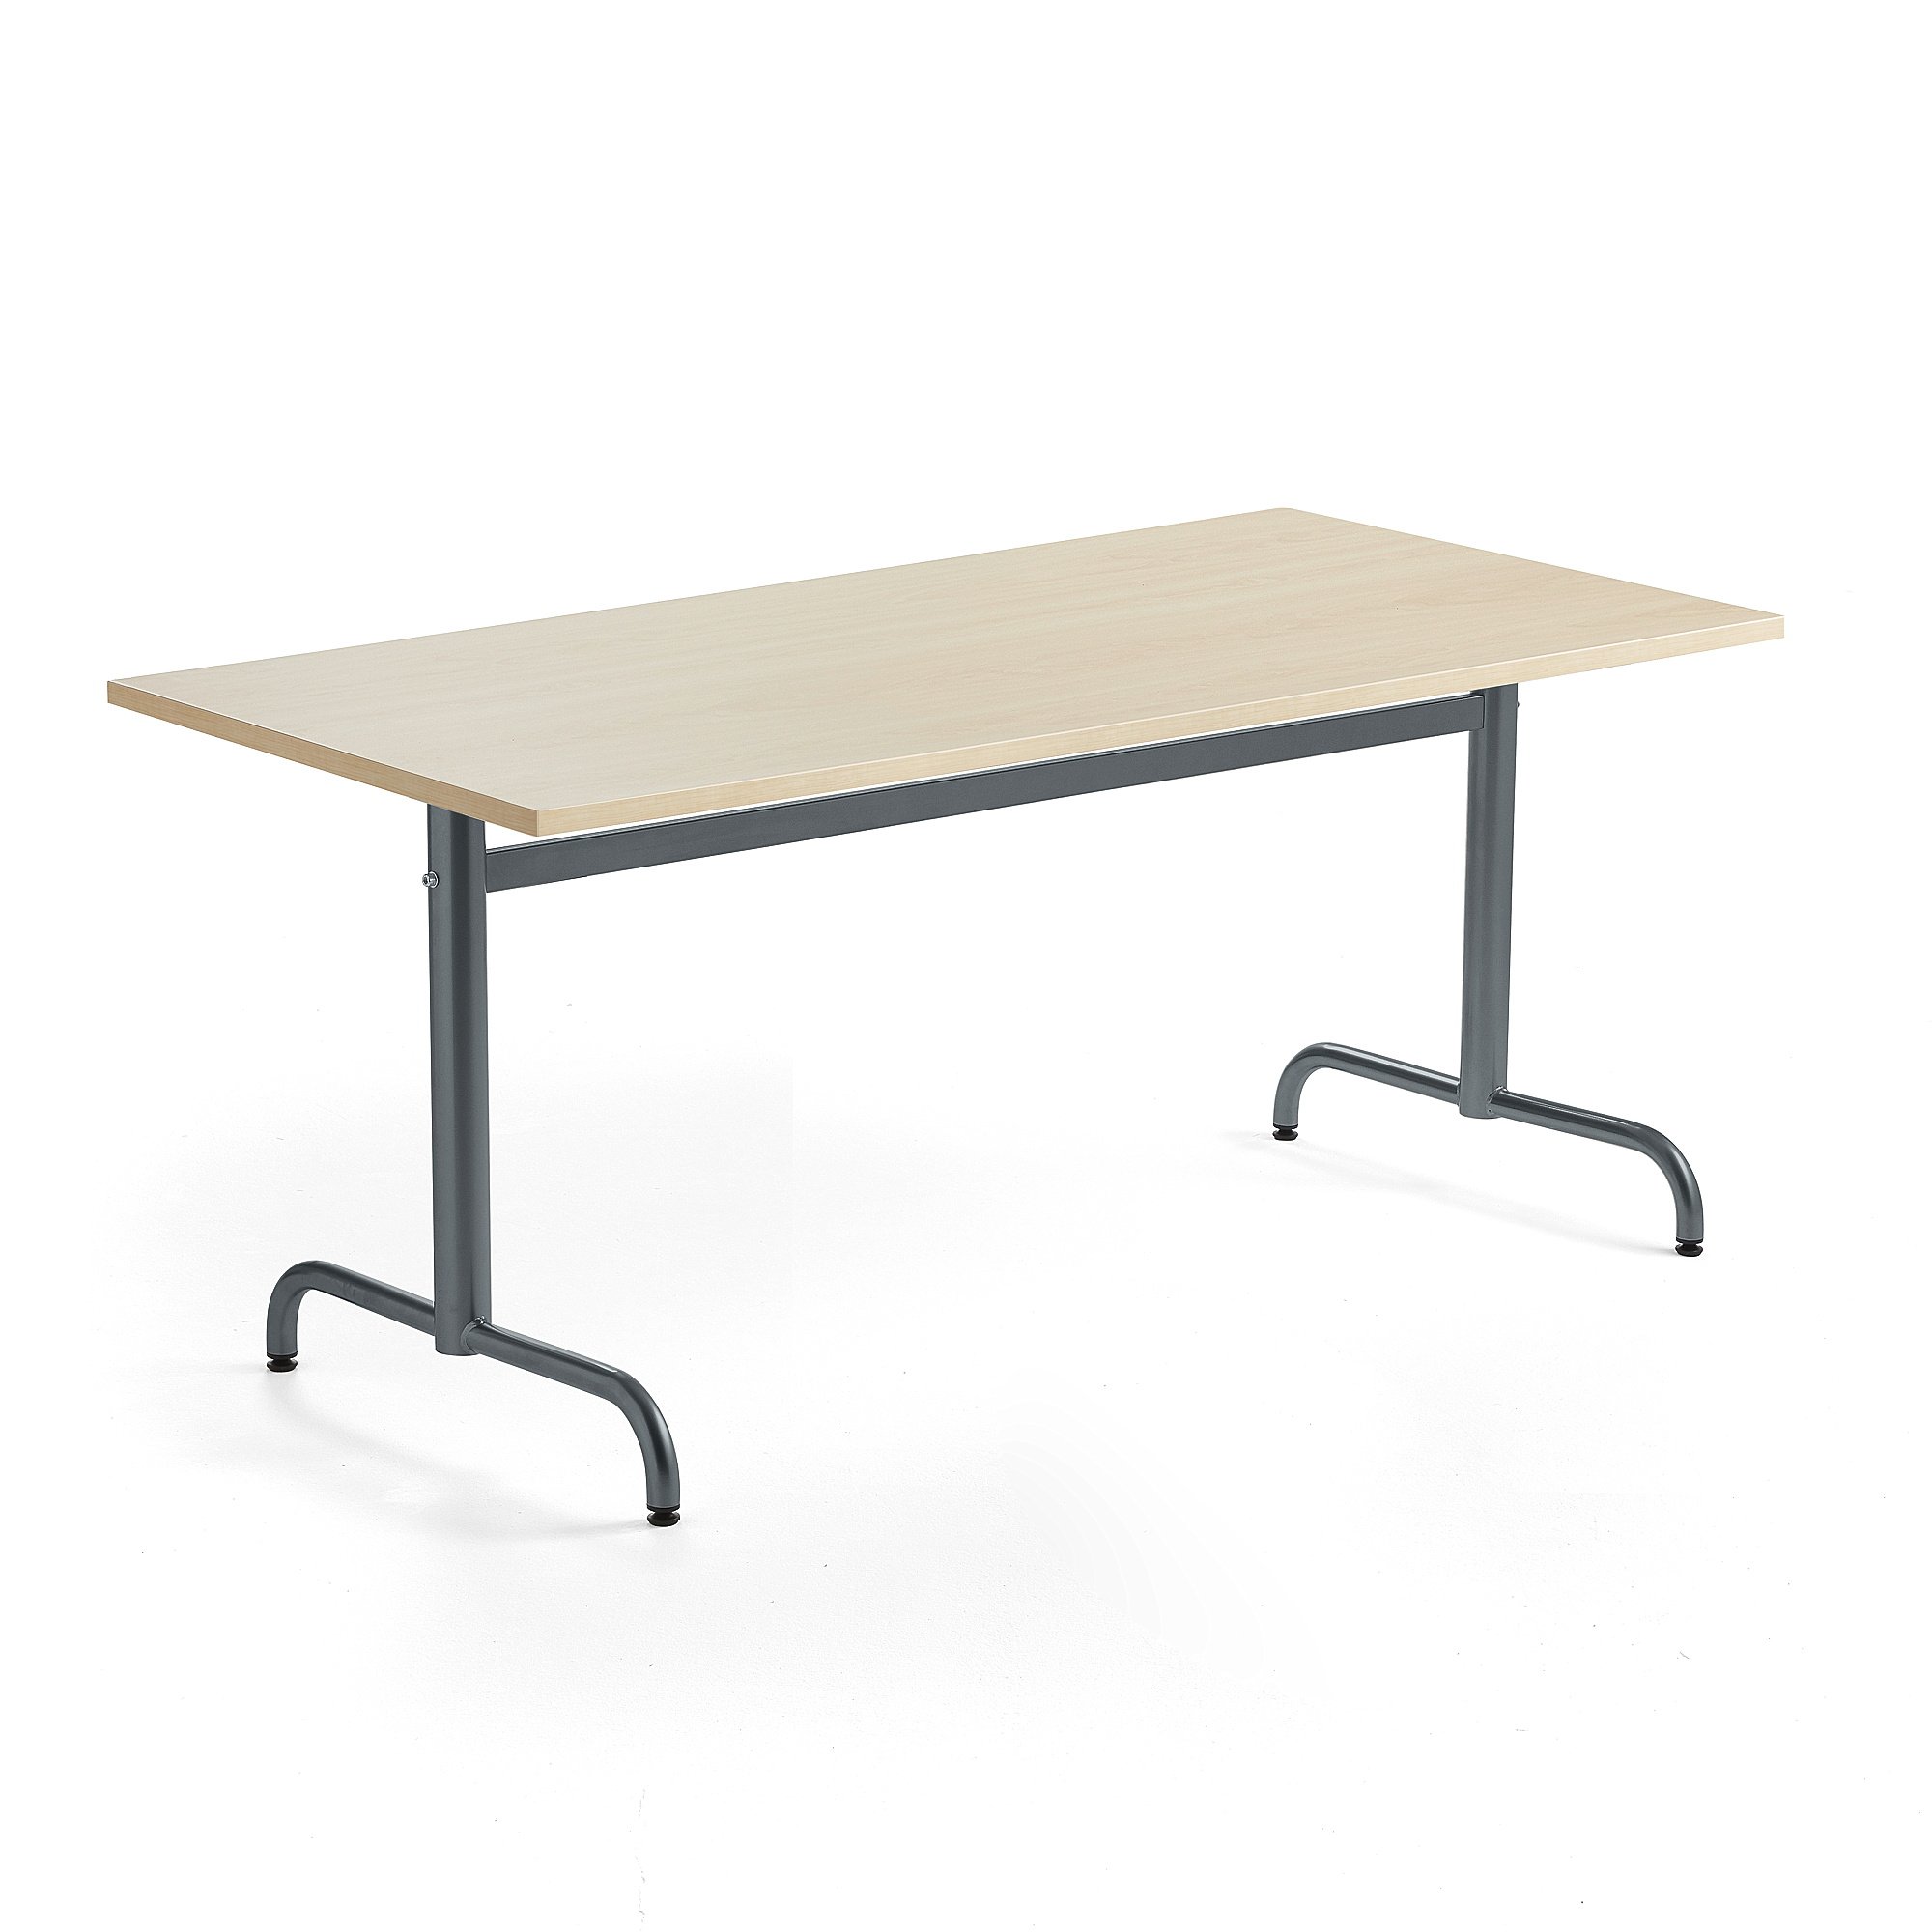 Stůl PLURAL, 1600x800x720 mm, akustická HPL deska, bříza, antracitově šedá